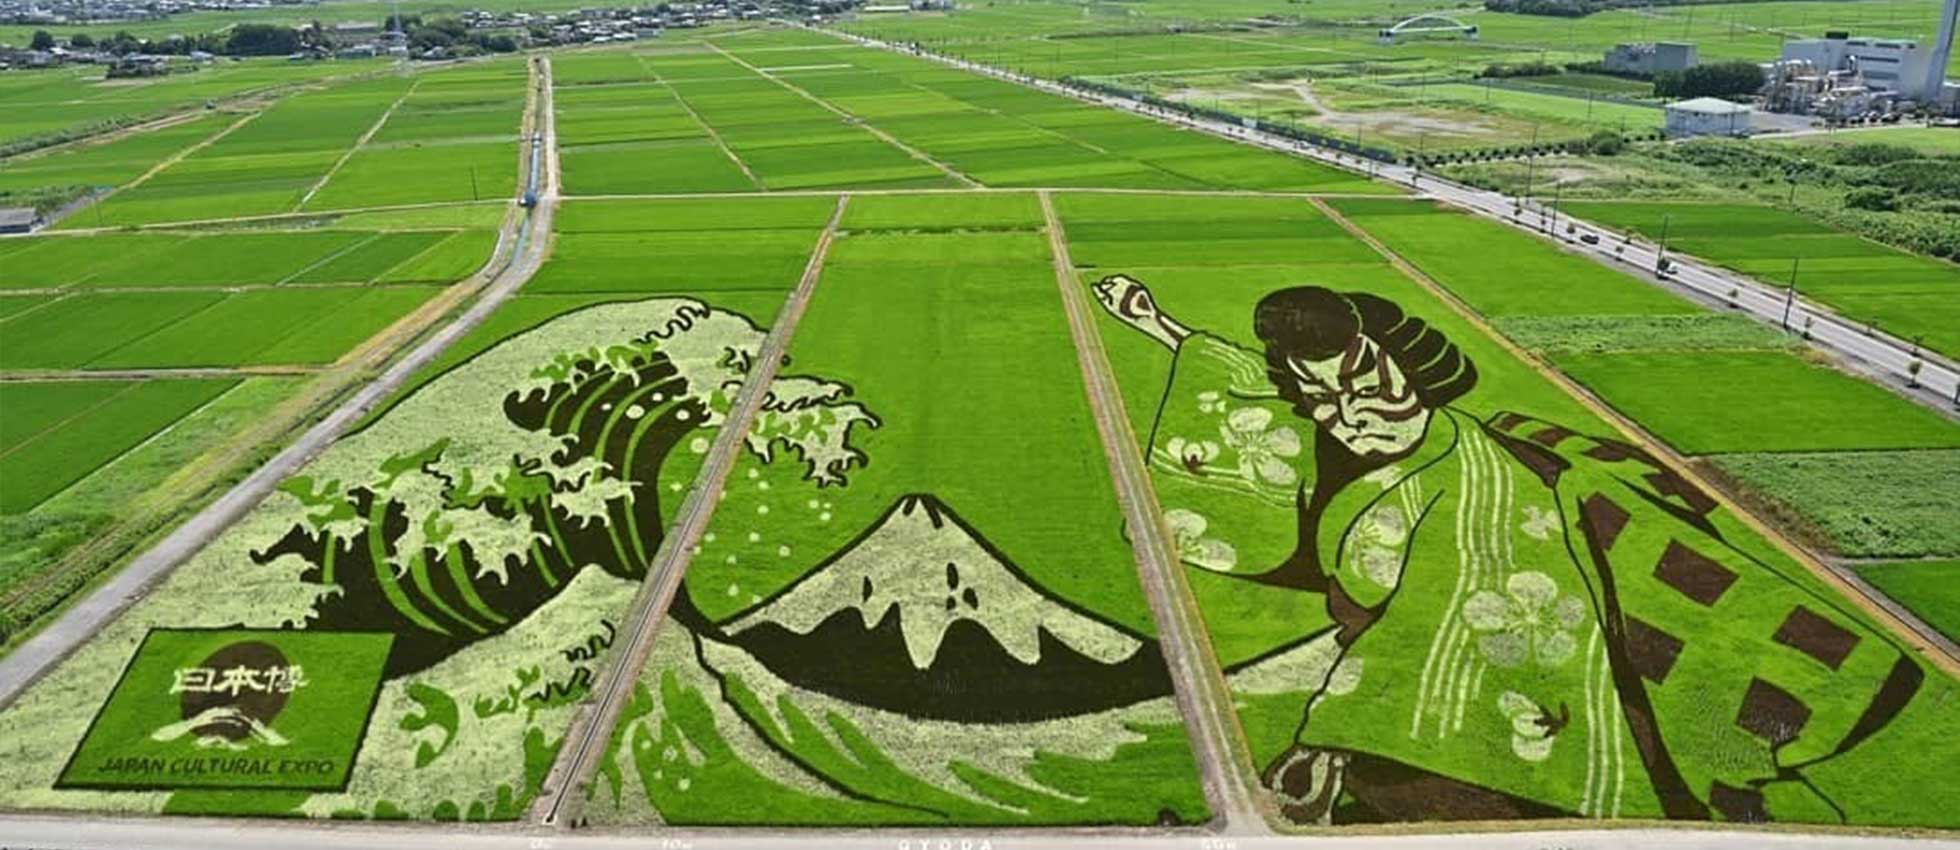 Cada año en Japón los arrozales son lienzos y las hojas de trigo son medios para obras de arte